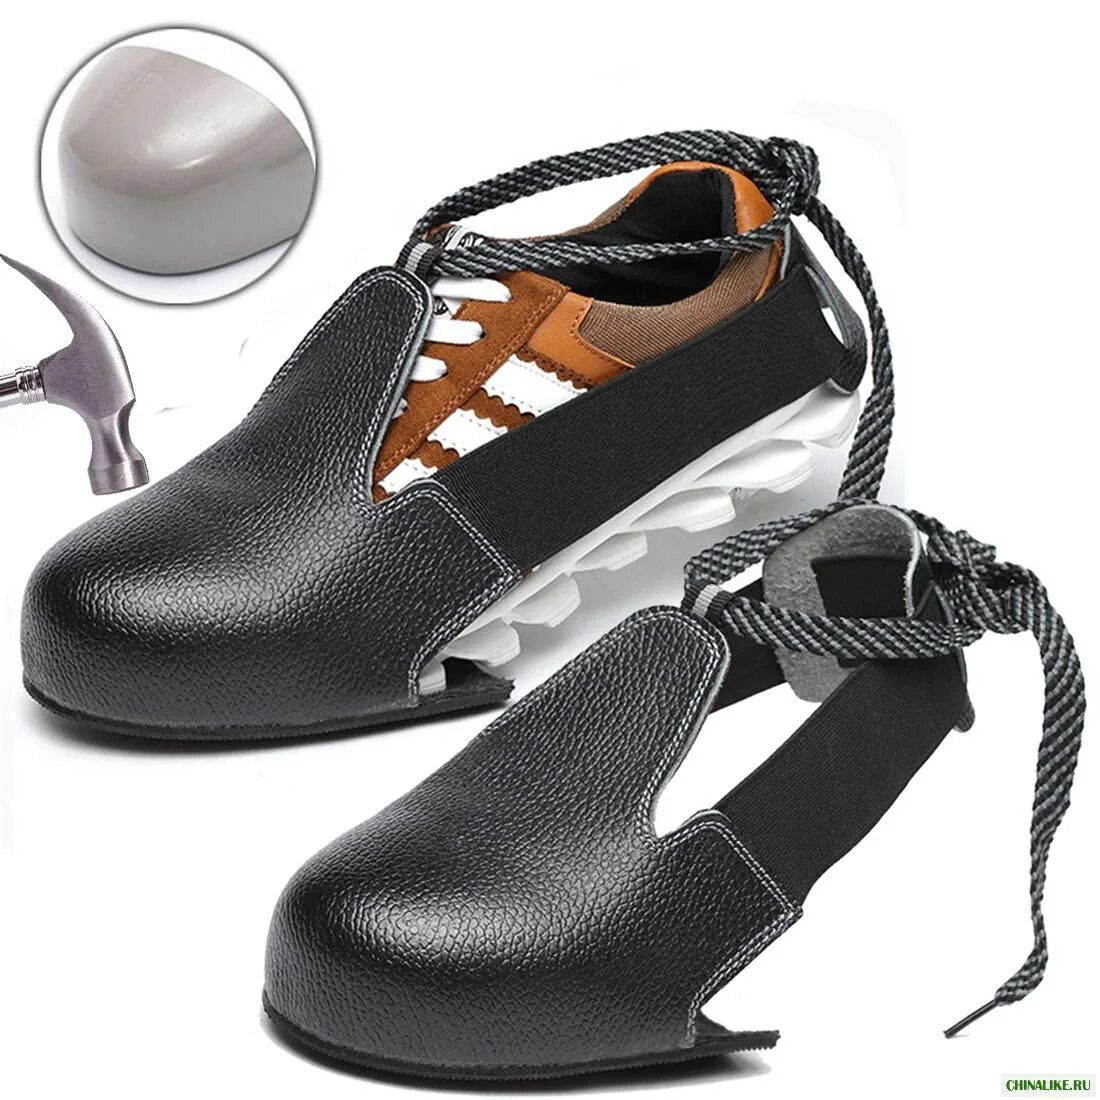 Подносок защитный съемный универсальный (размер 35-45). Обувь защитный съемный универсальный (размер 35-45). Steel Toe обувь. Защитные подноски на обувь. Защита обуви купить